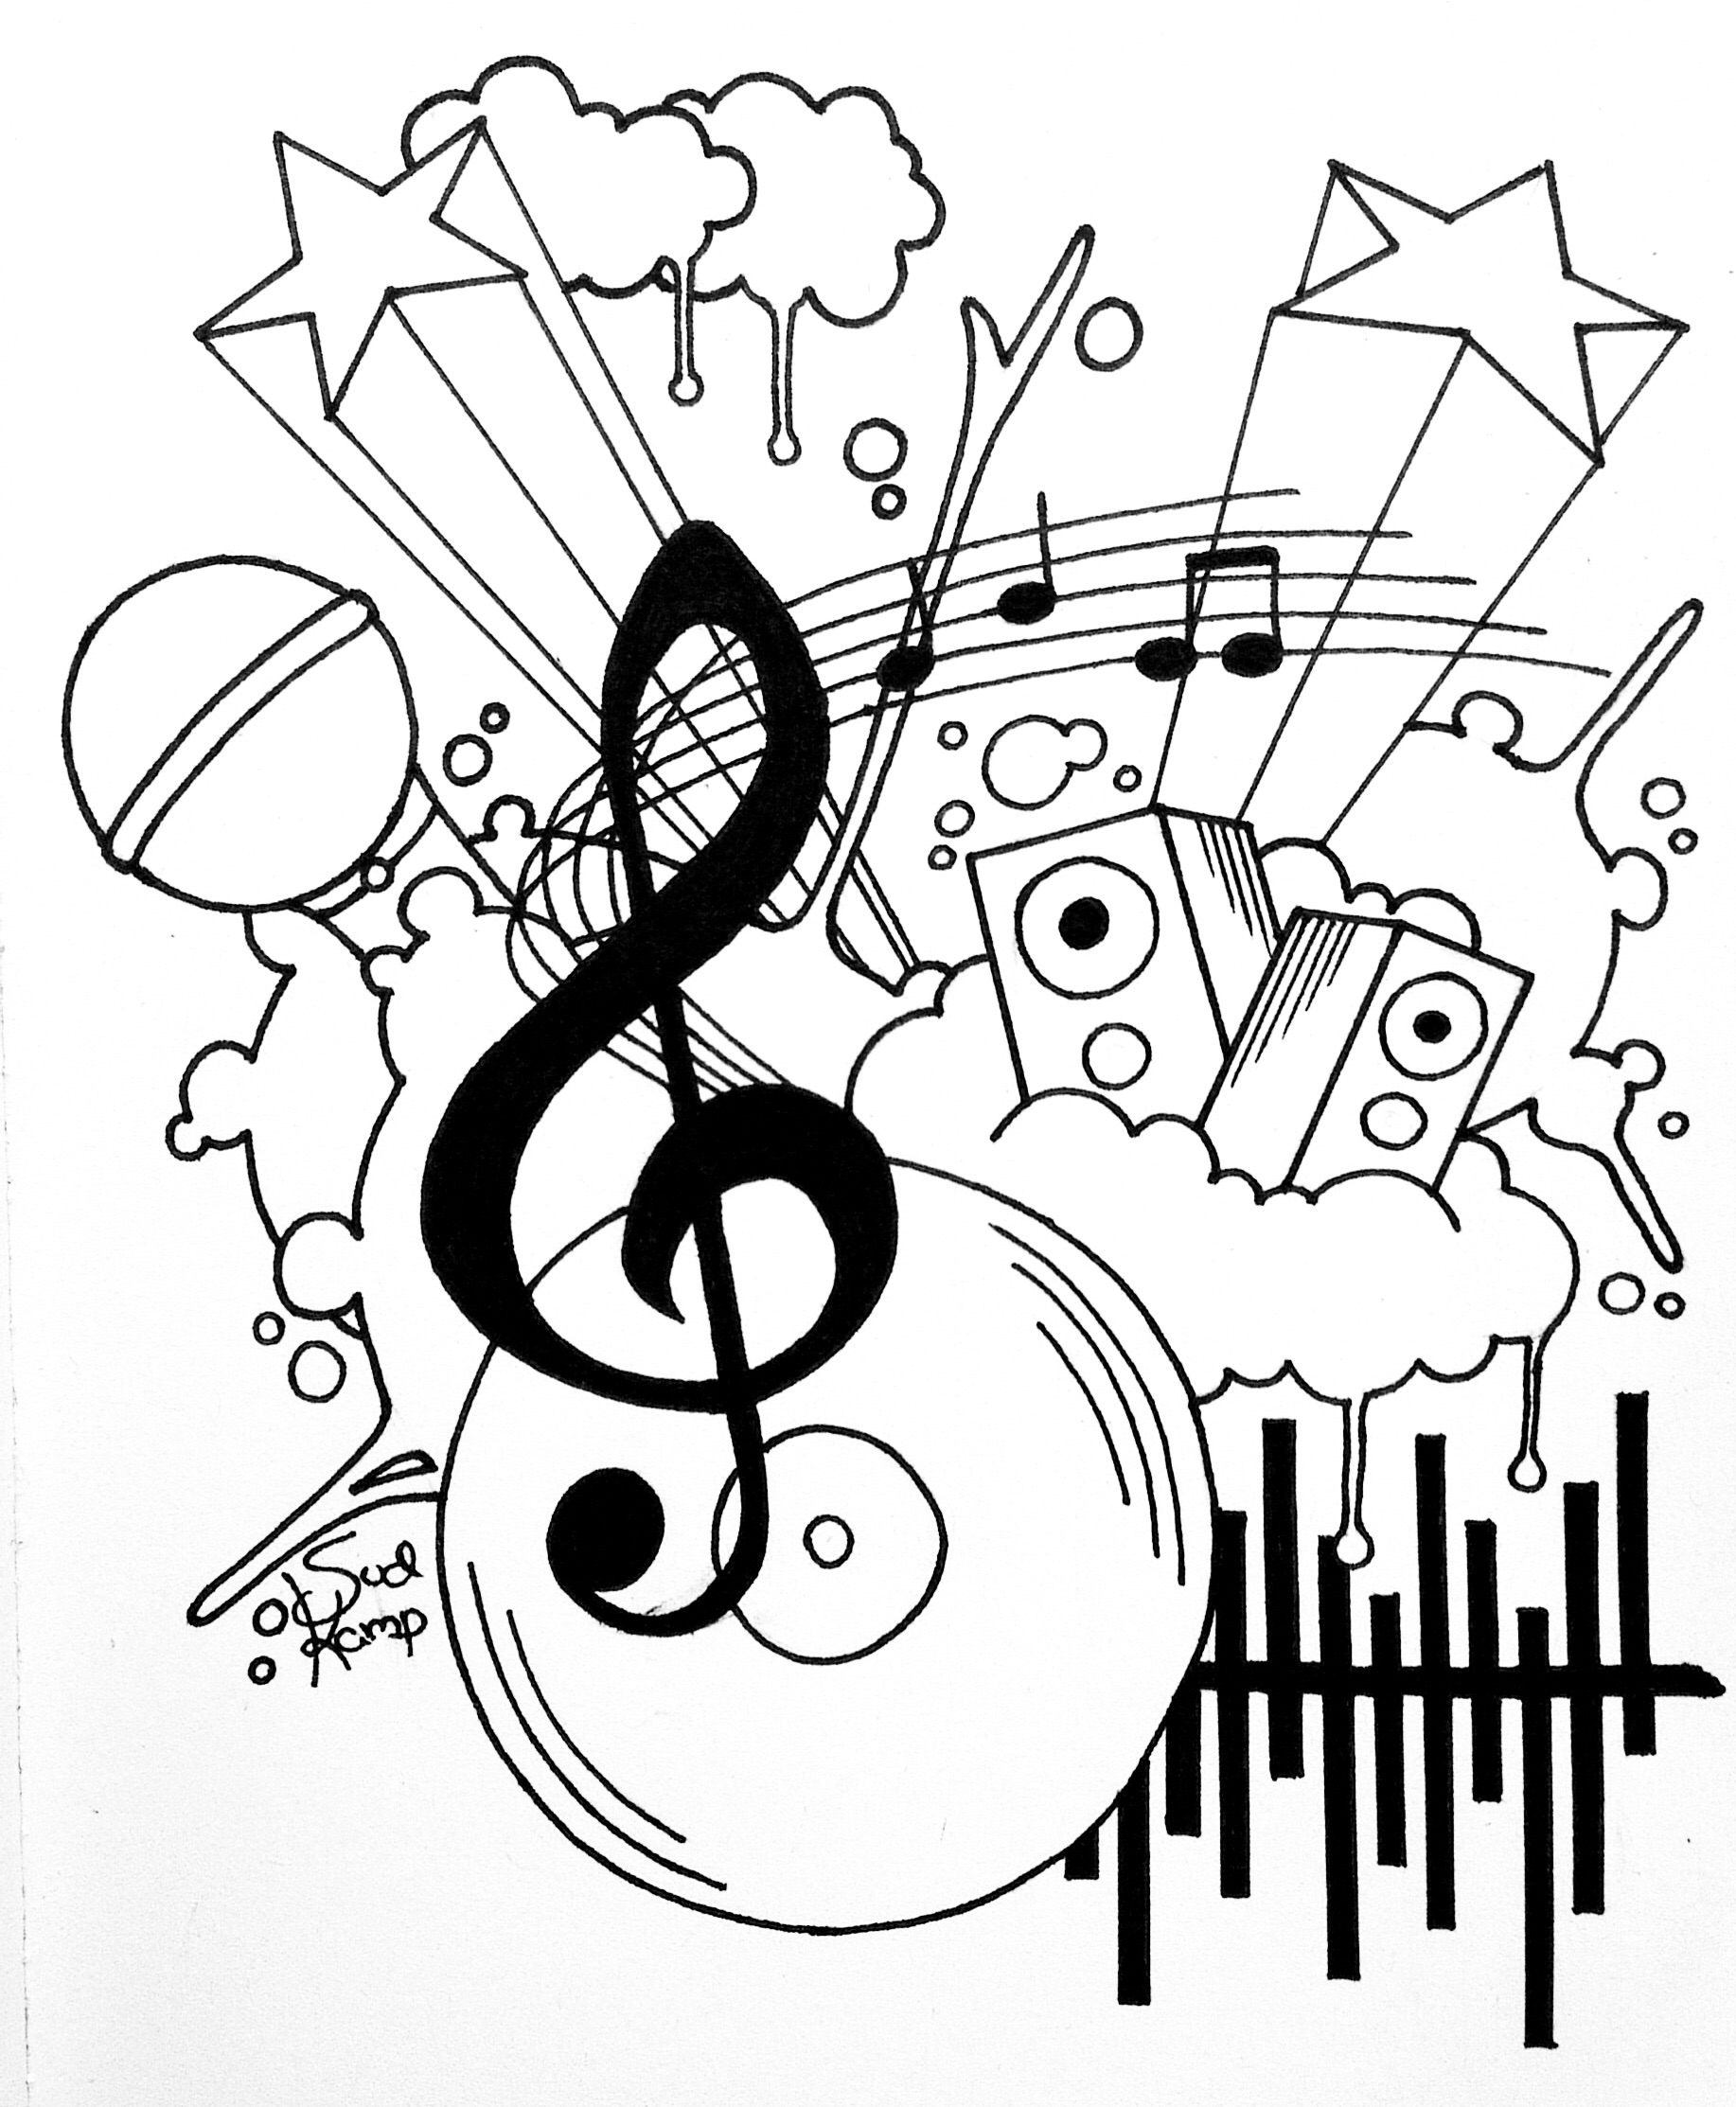 Gambar Doodle Music Medsos Kini